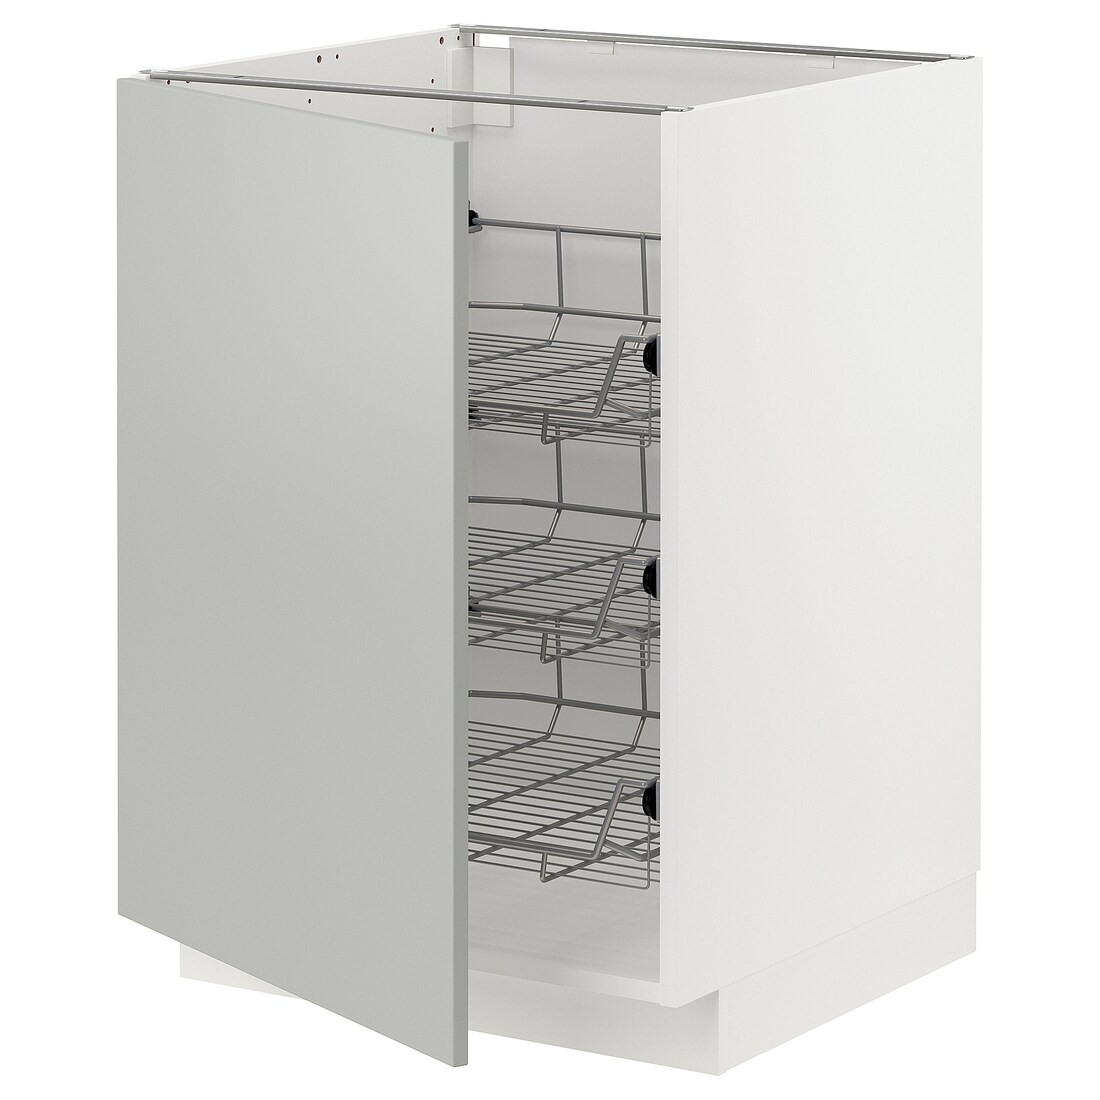 METOD Напольный шкаф / проволочные корзины, белый / Хавсторп светло-серый, 60x60 см